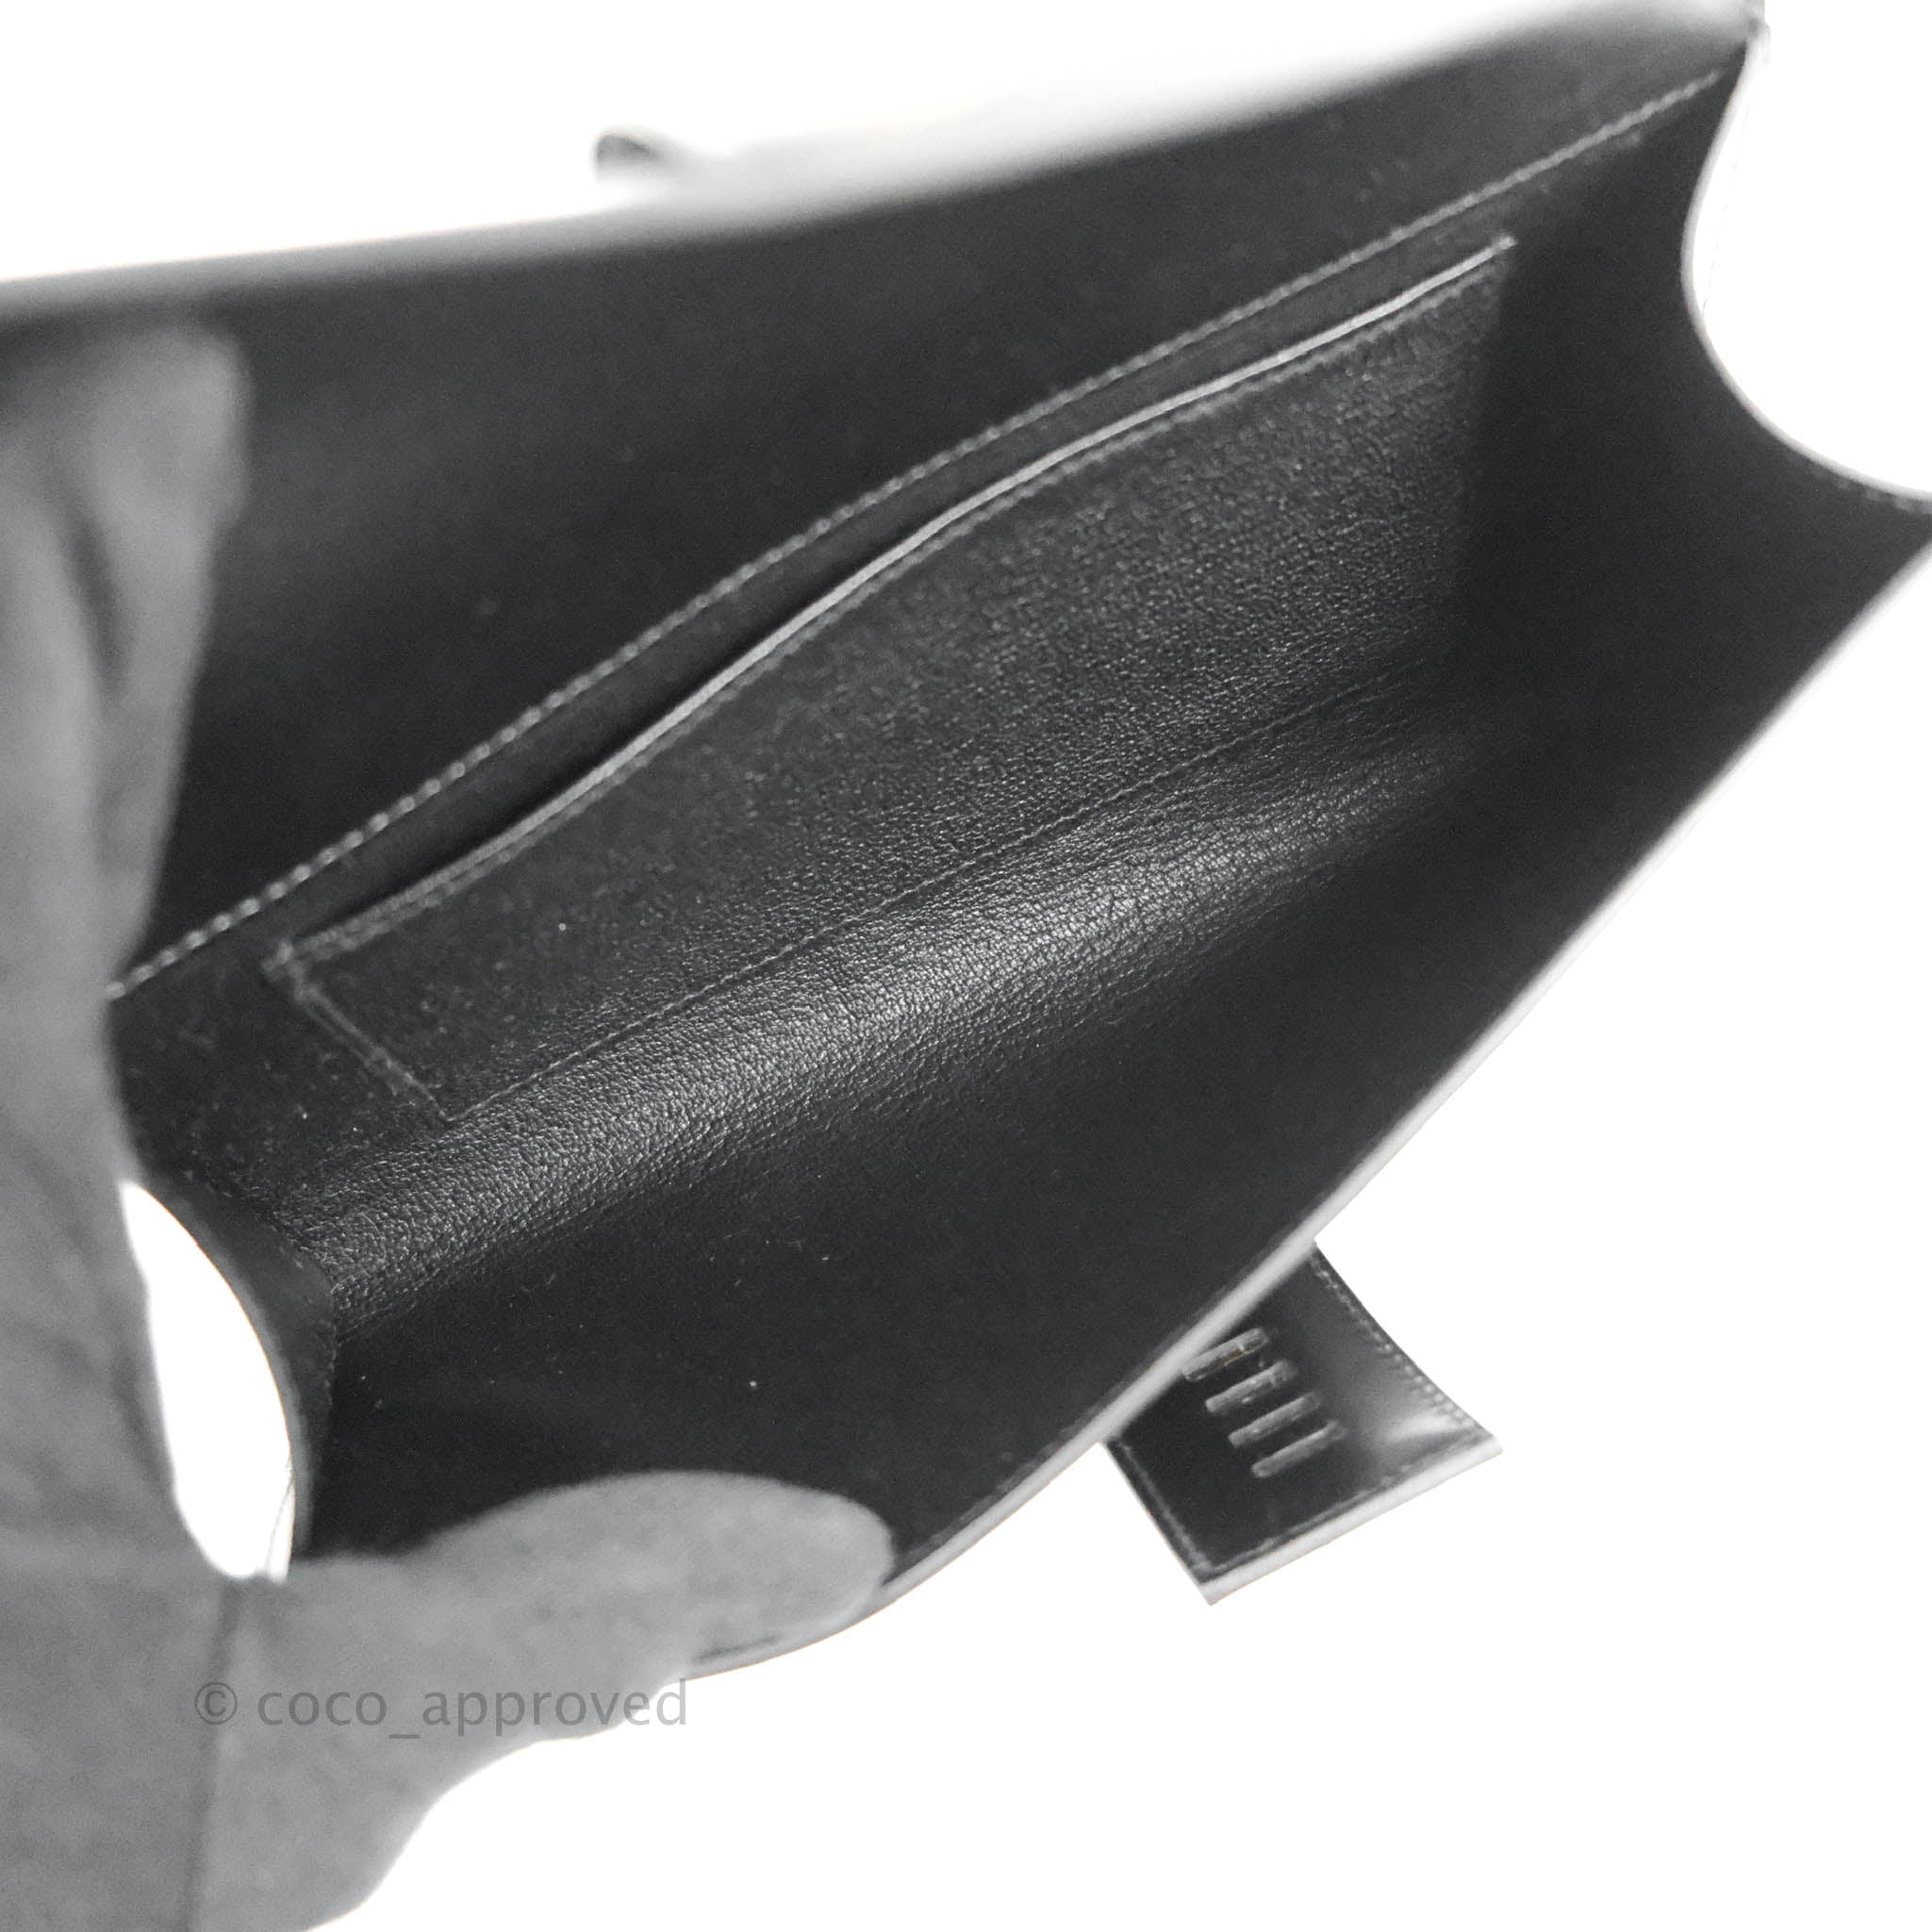 Hermes 23cm GRIOLET Box Leather Medor Clutch Bag